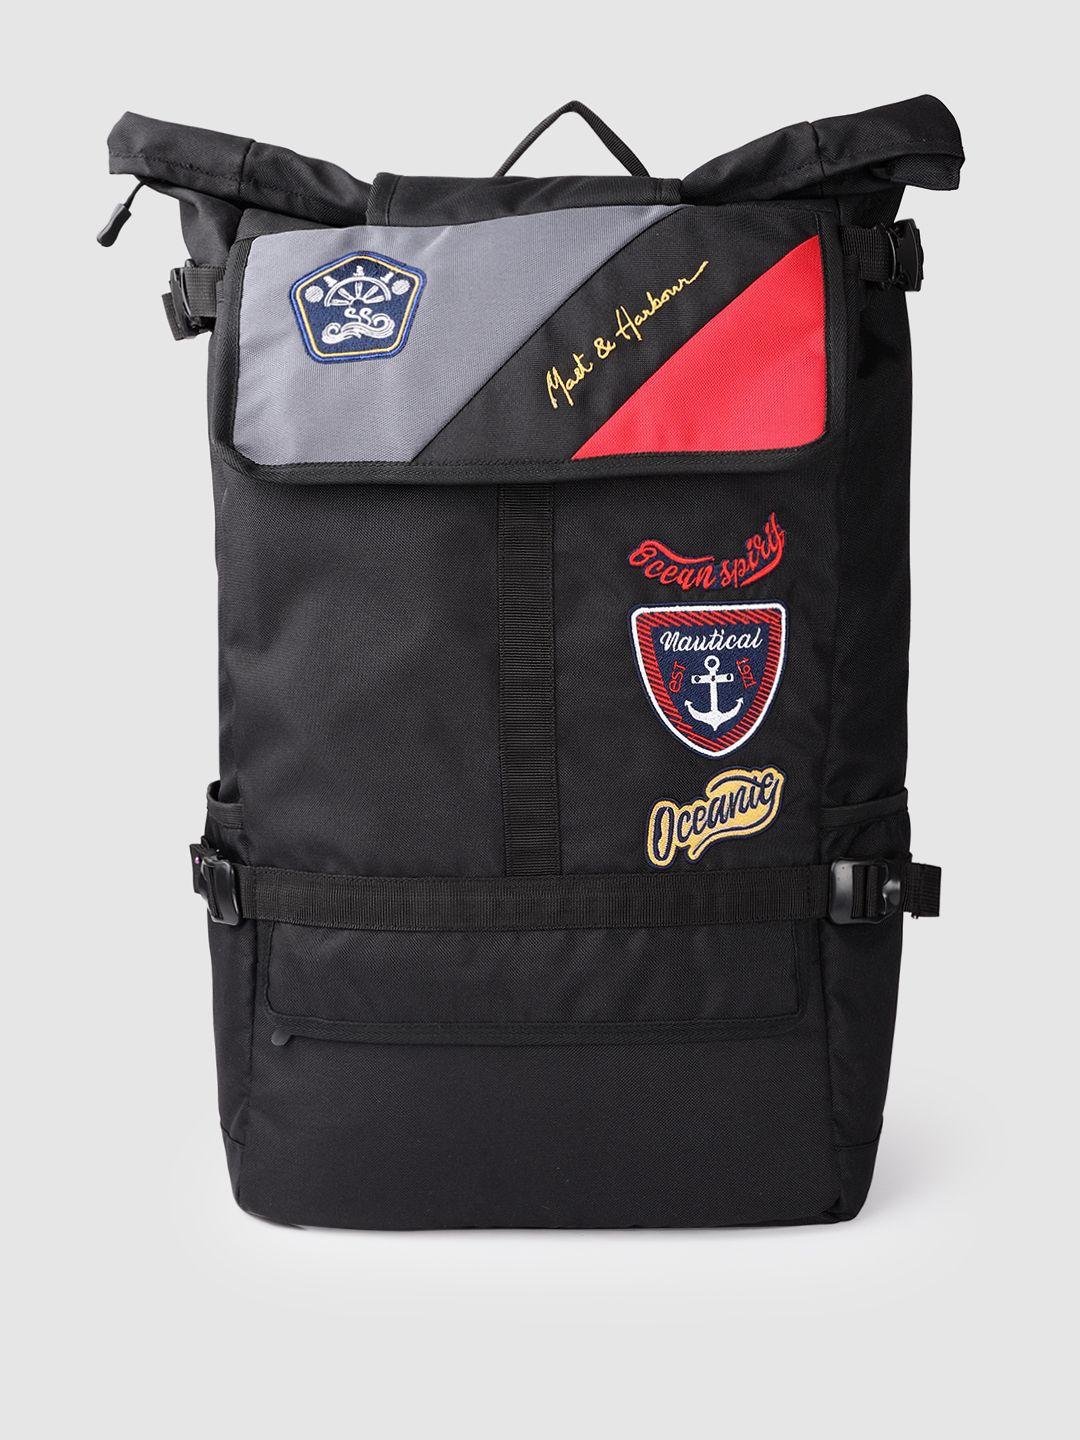 mast & harbour unisex black & red solid backpack 21.4 l